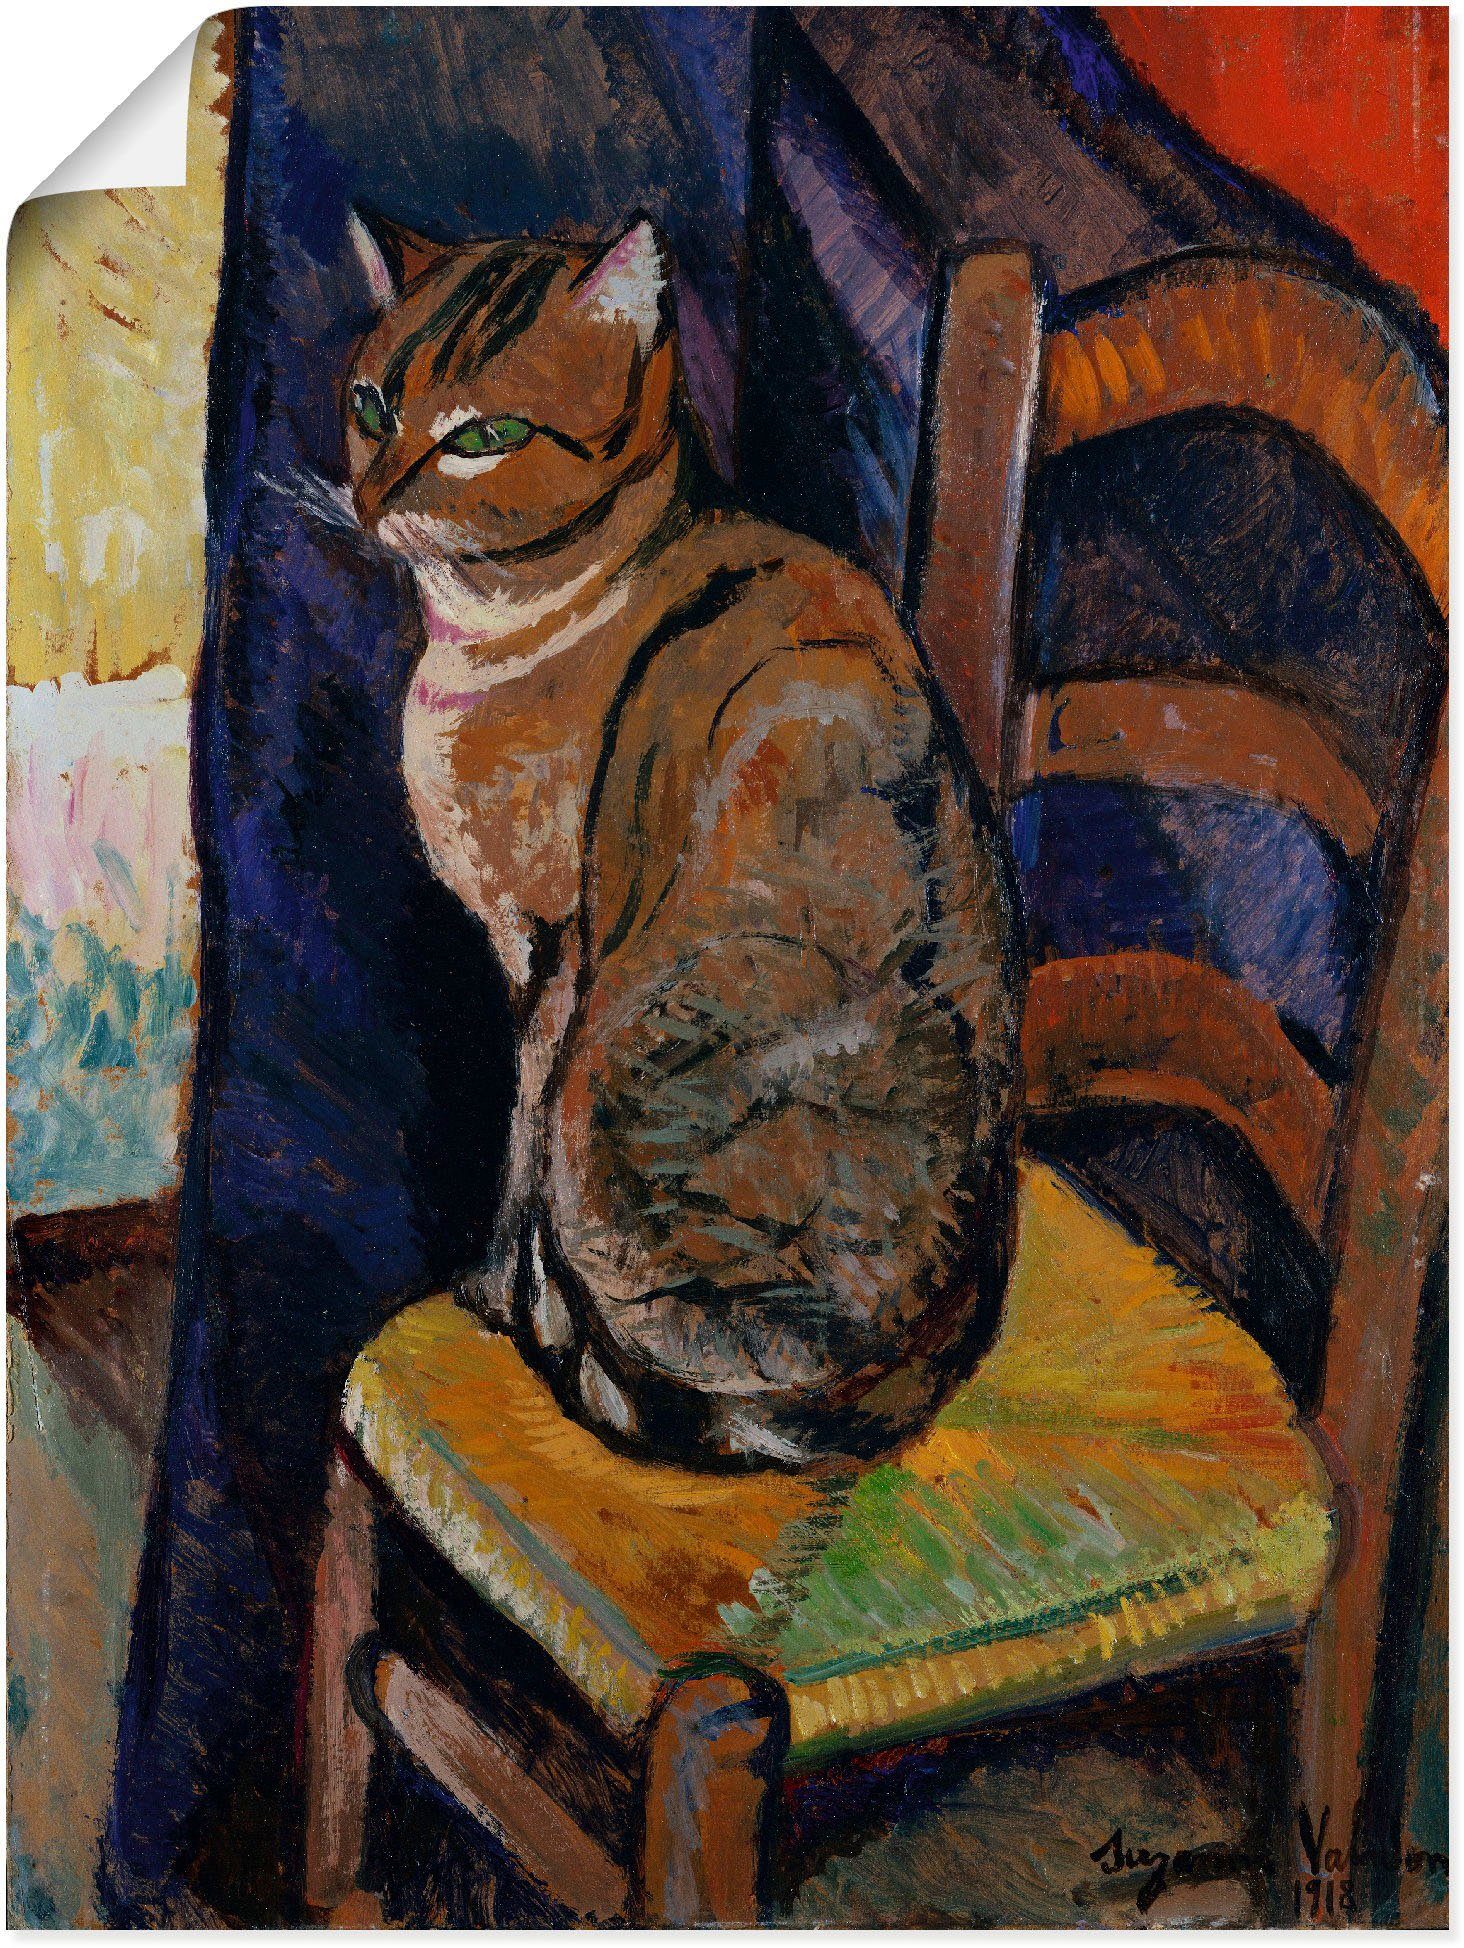 Artland Artprint Tekening stoel zittende kat. in vele afmetingen & productsoorten -artprint op linnen, poster, muursticker / wandfolie ook geschikt voor de badkamer (1 stuk)